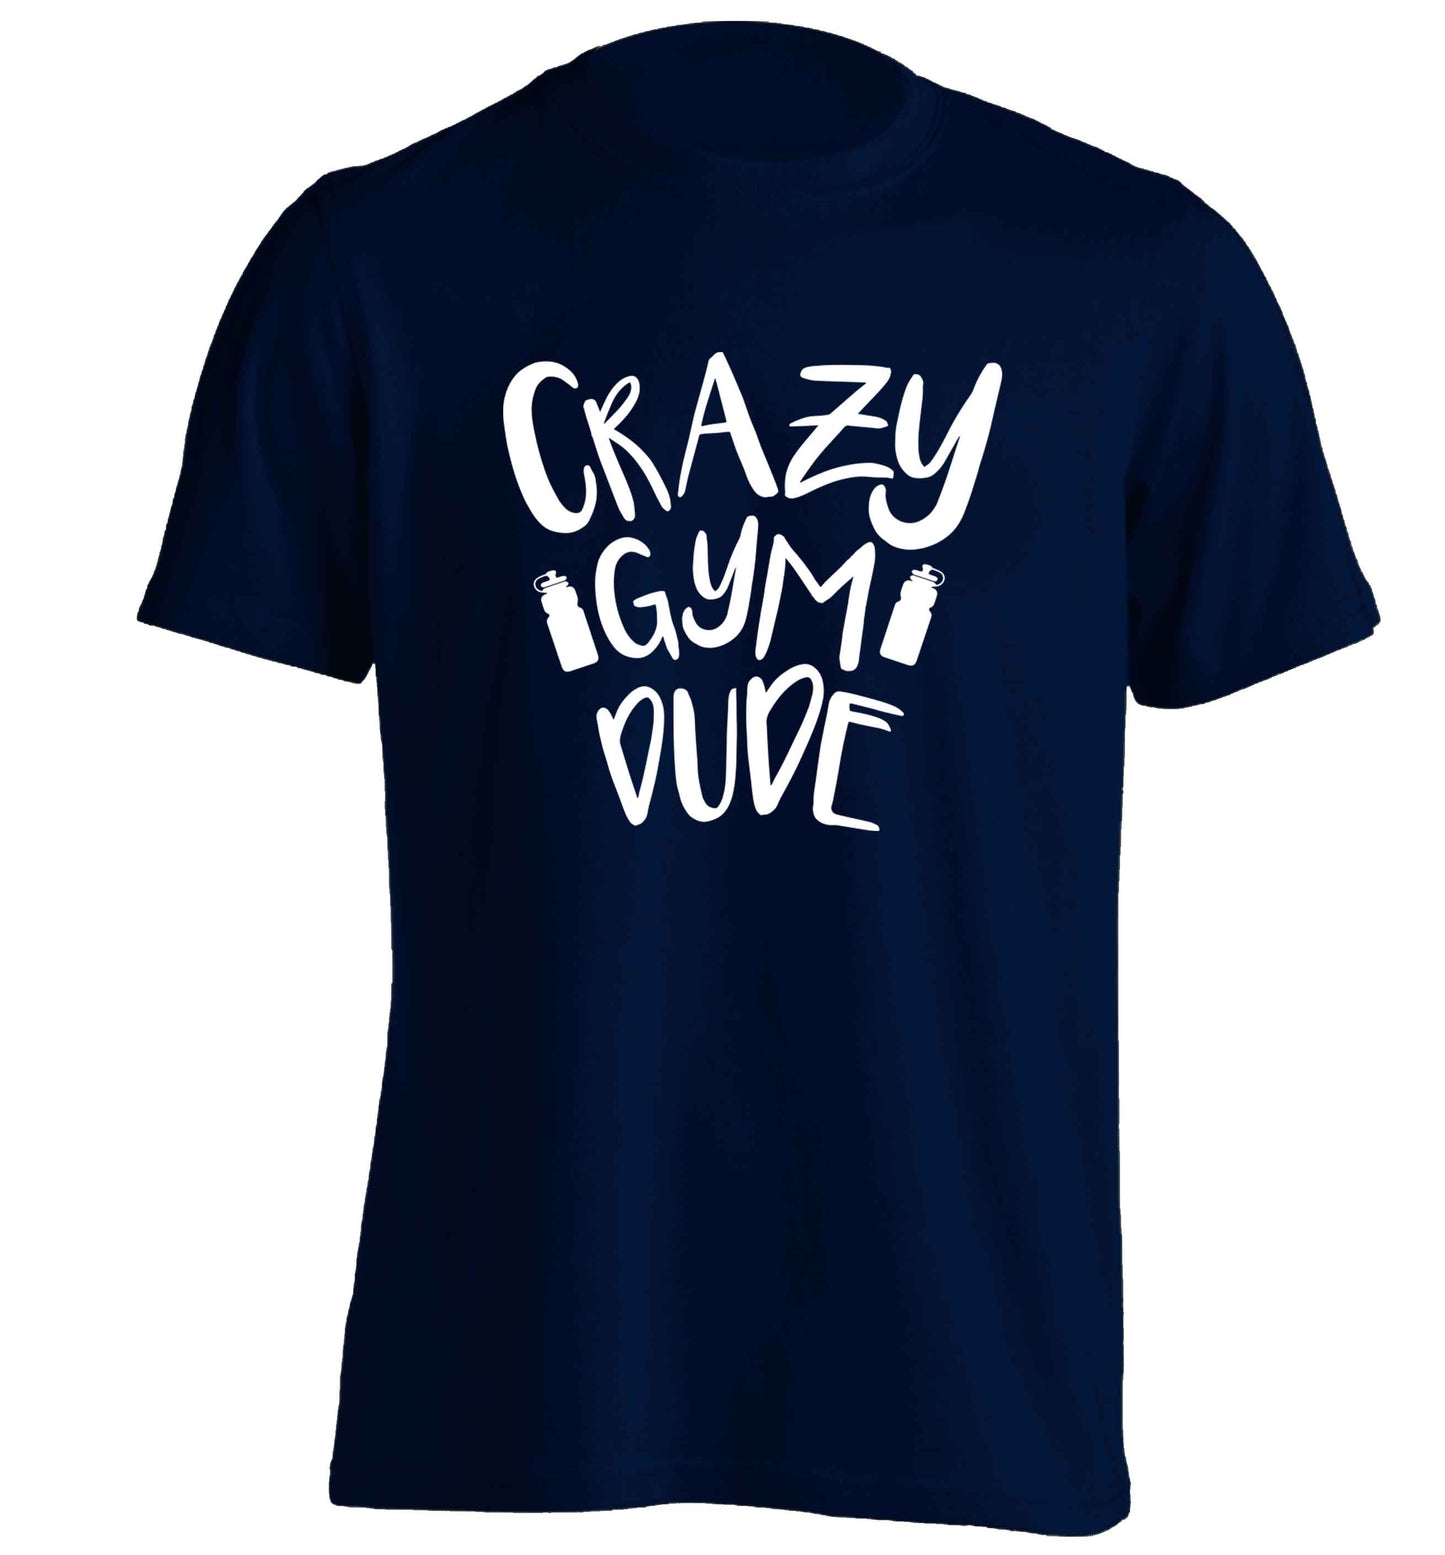 Crazy gym dude adults unisex navy Tshirt 2XL